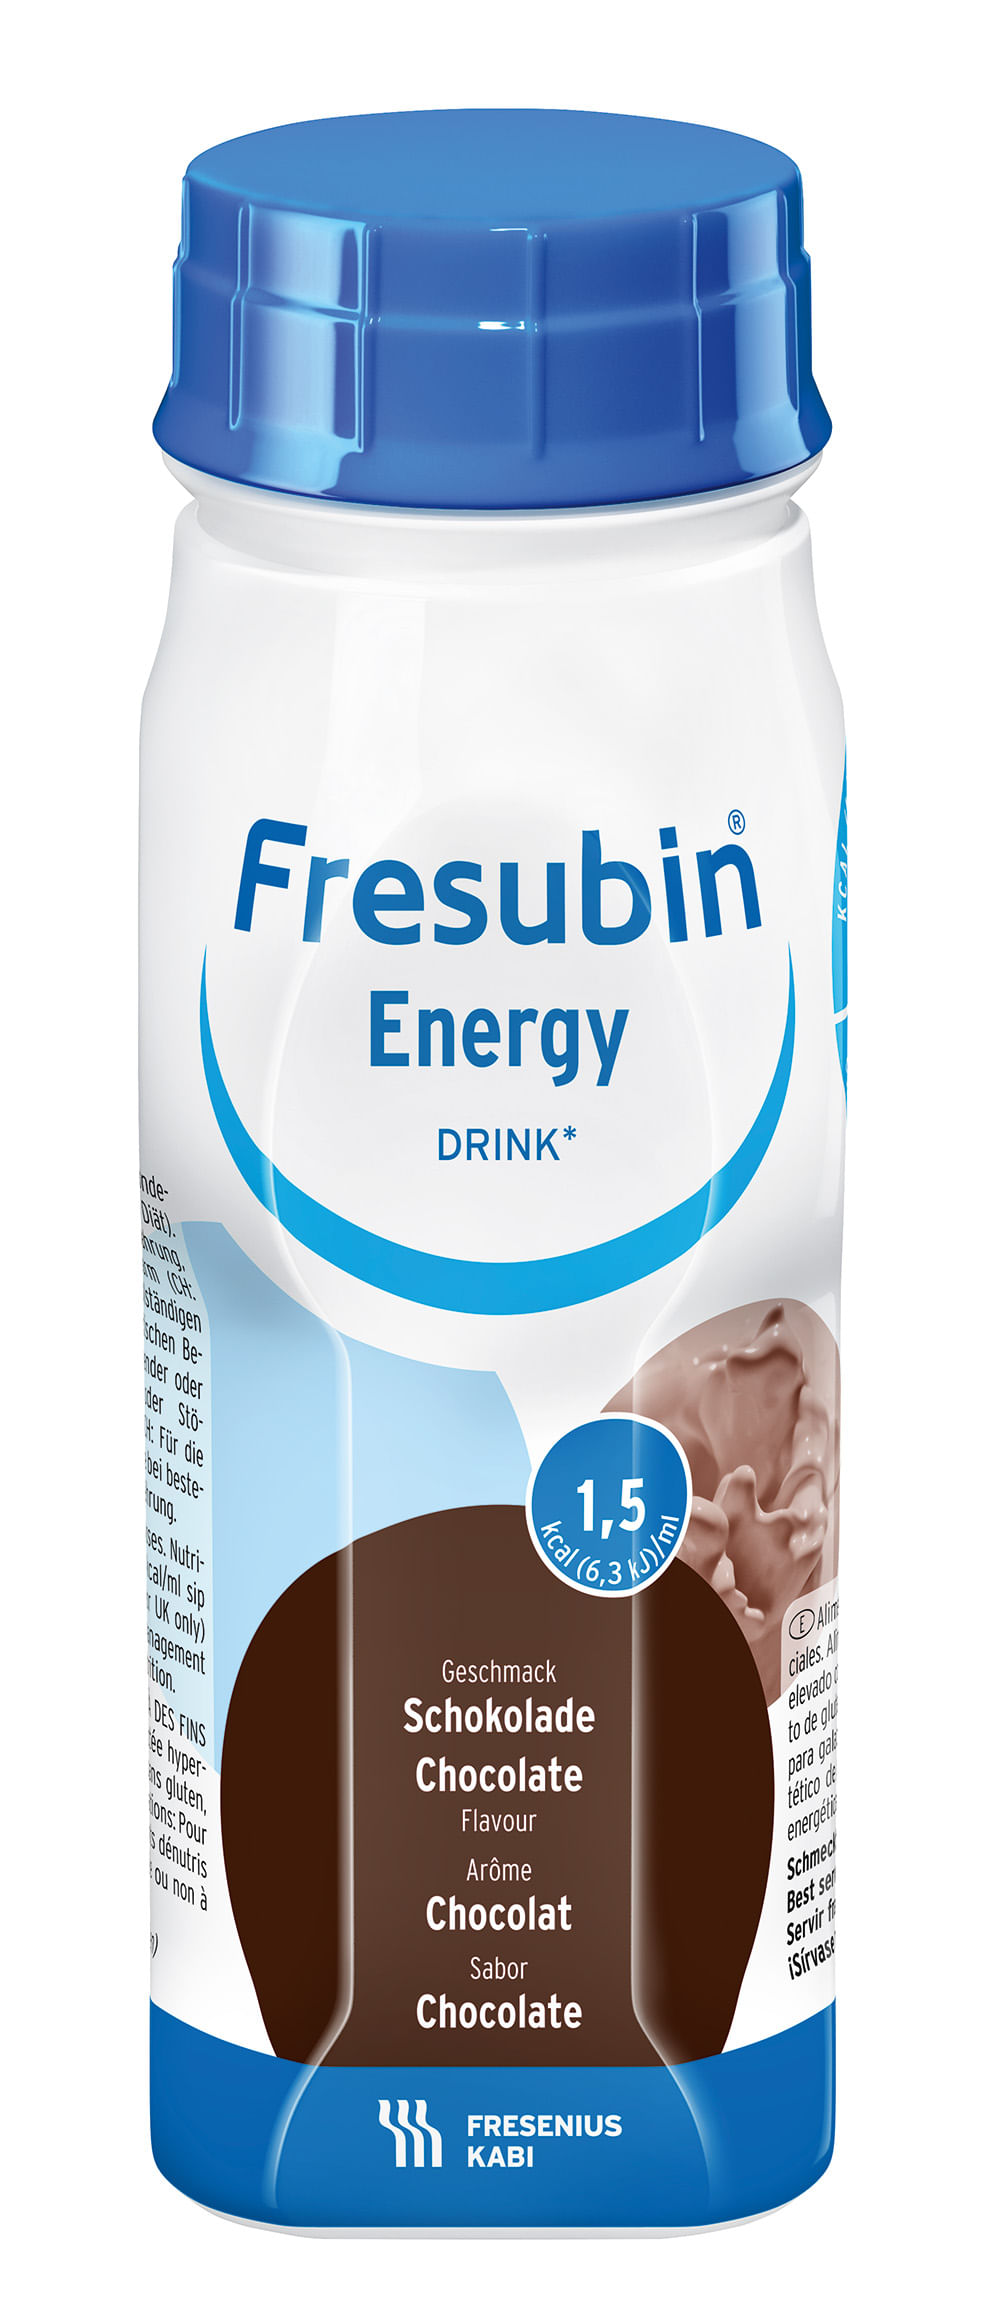 Fresubin_Energy_Chocolate_EBo_Frontal